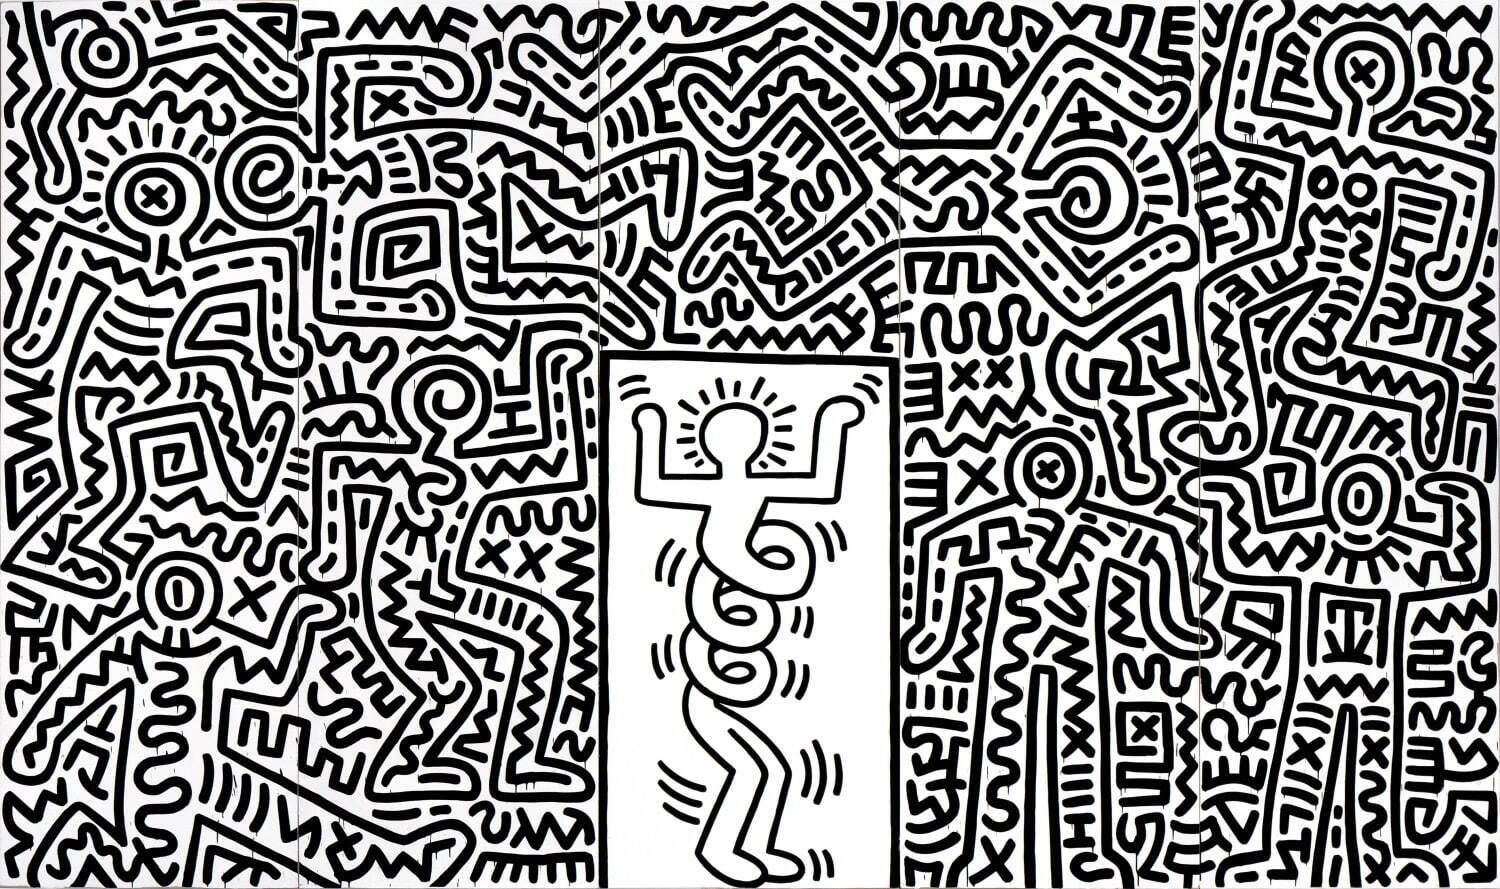 キース・ヘリング 『スウィート・サタデー・ナイト』のための舞台セット 1985年
中村キース・ヘリング美術館蔵 Keith Haring Artwork ©Keith Haring Foundation